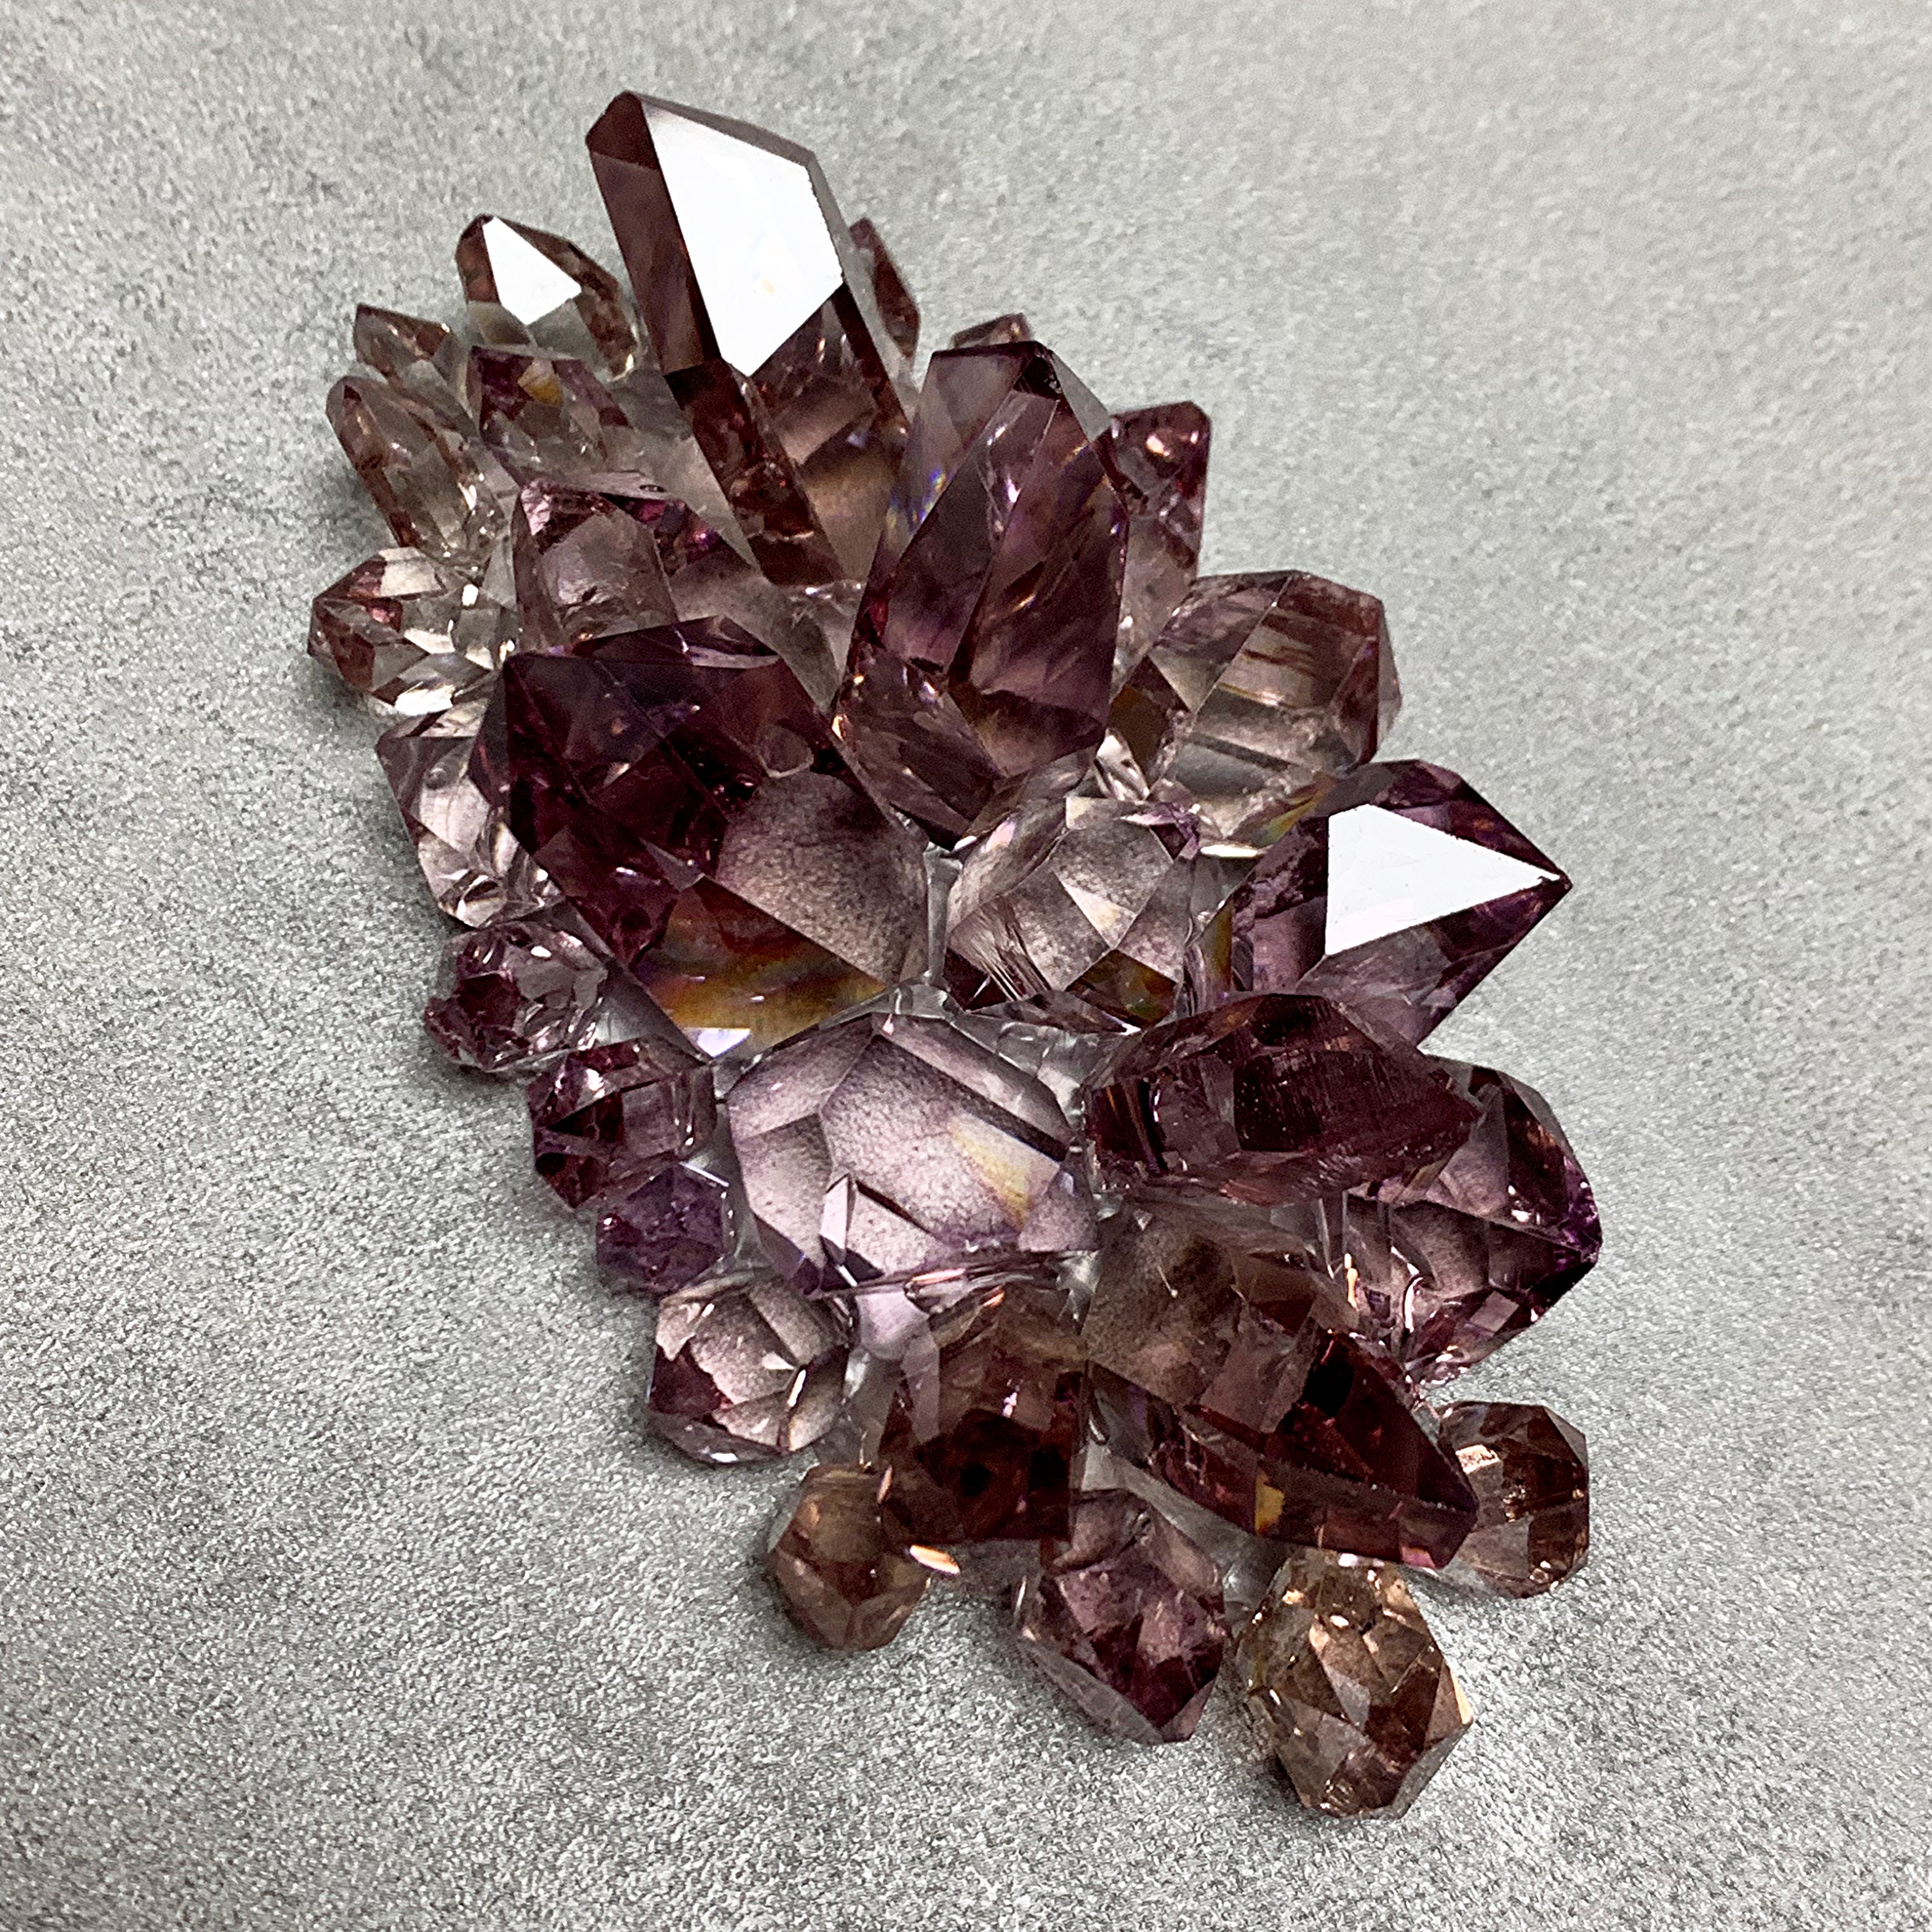 #3 Kristall Cluster Silikon Mold Oval Nov Collection'21